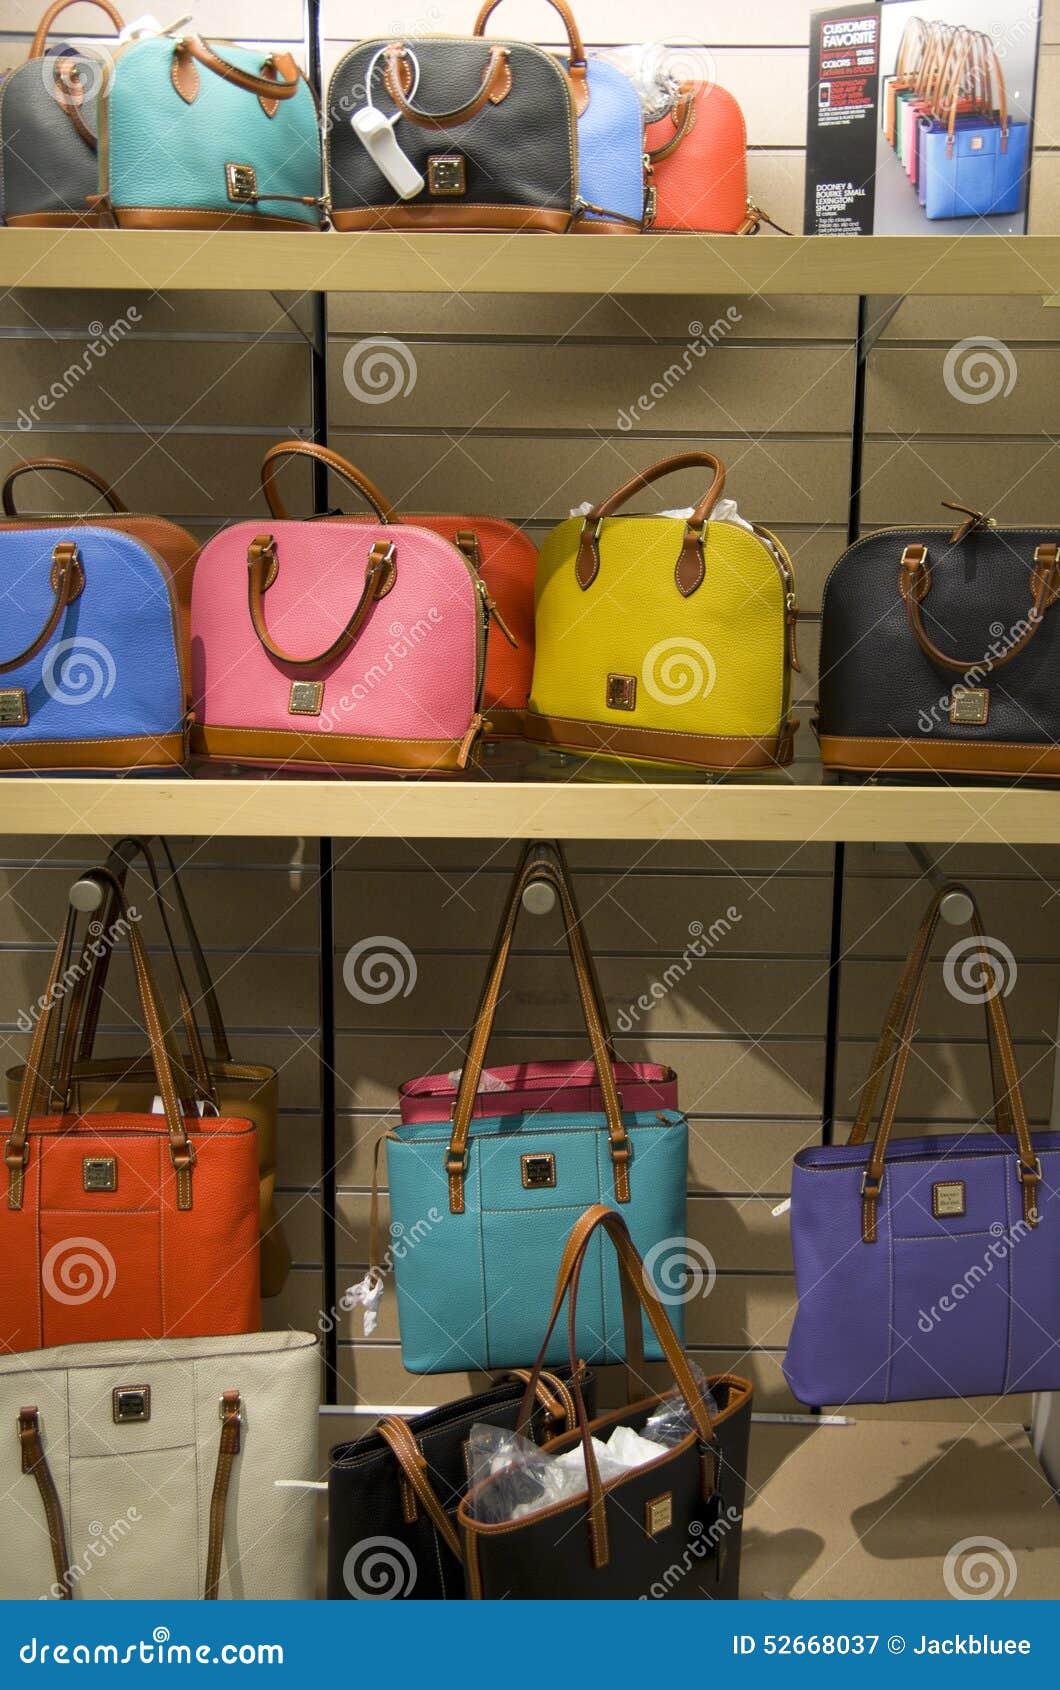 Dooney and Bourke Handbags